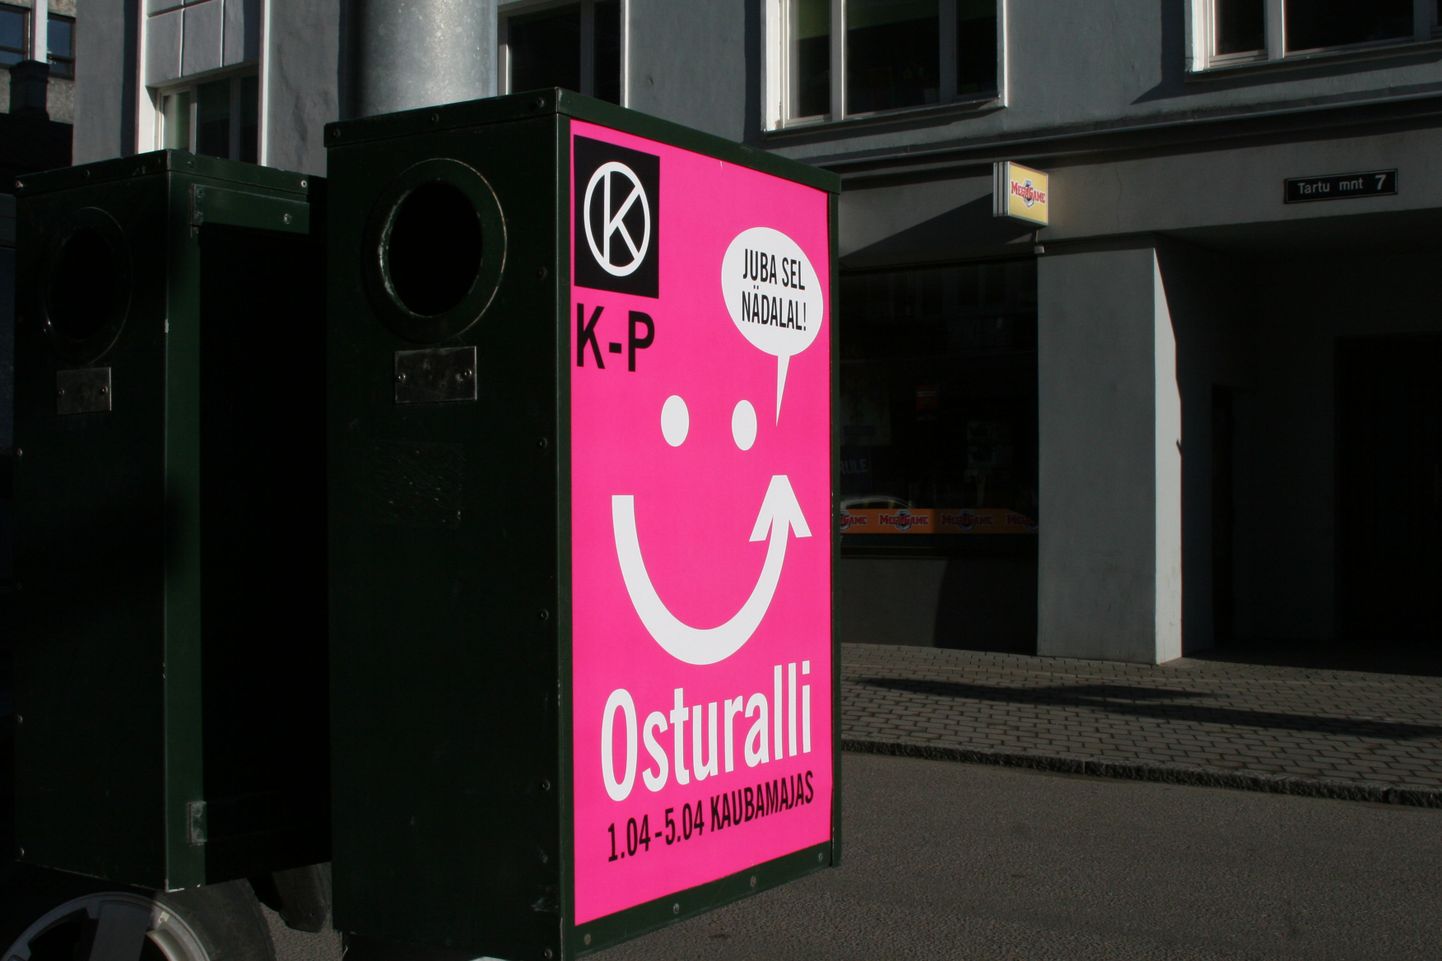 В торговом центре Kaubamaja проходит кампания Osturalli.